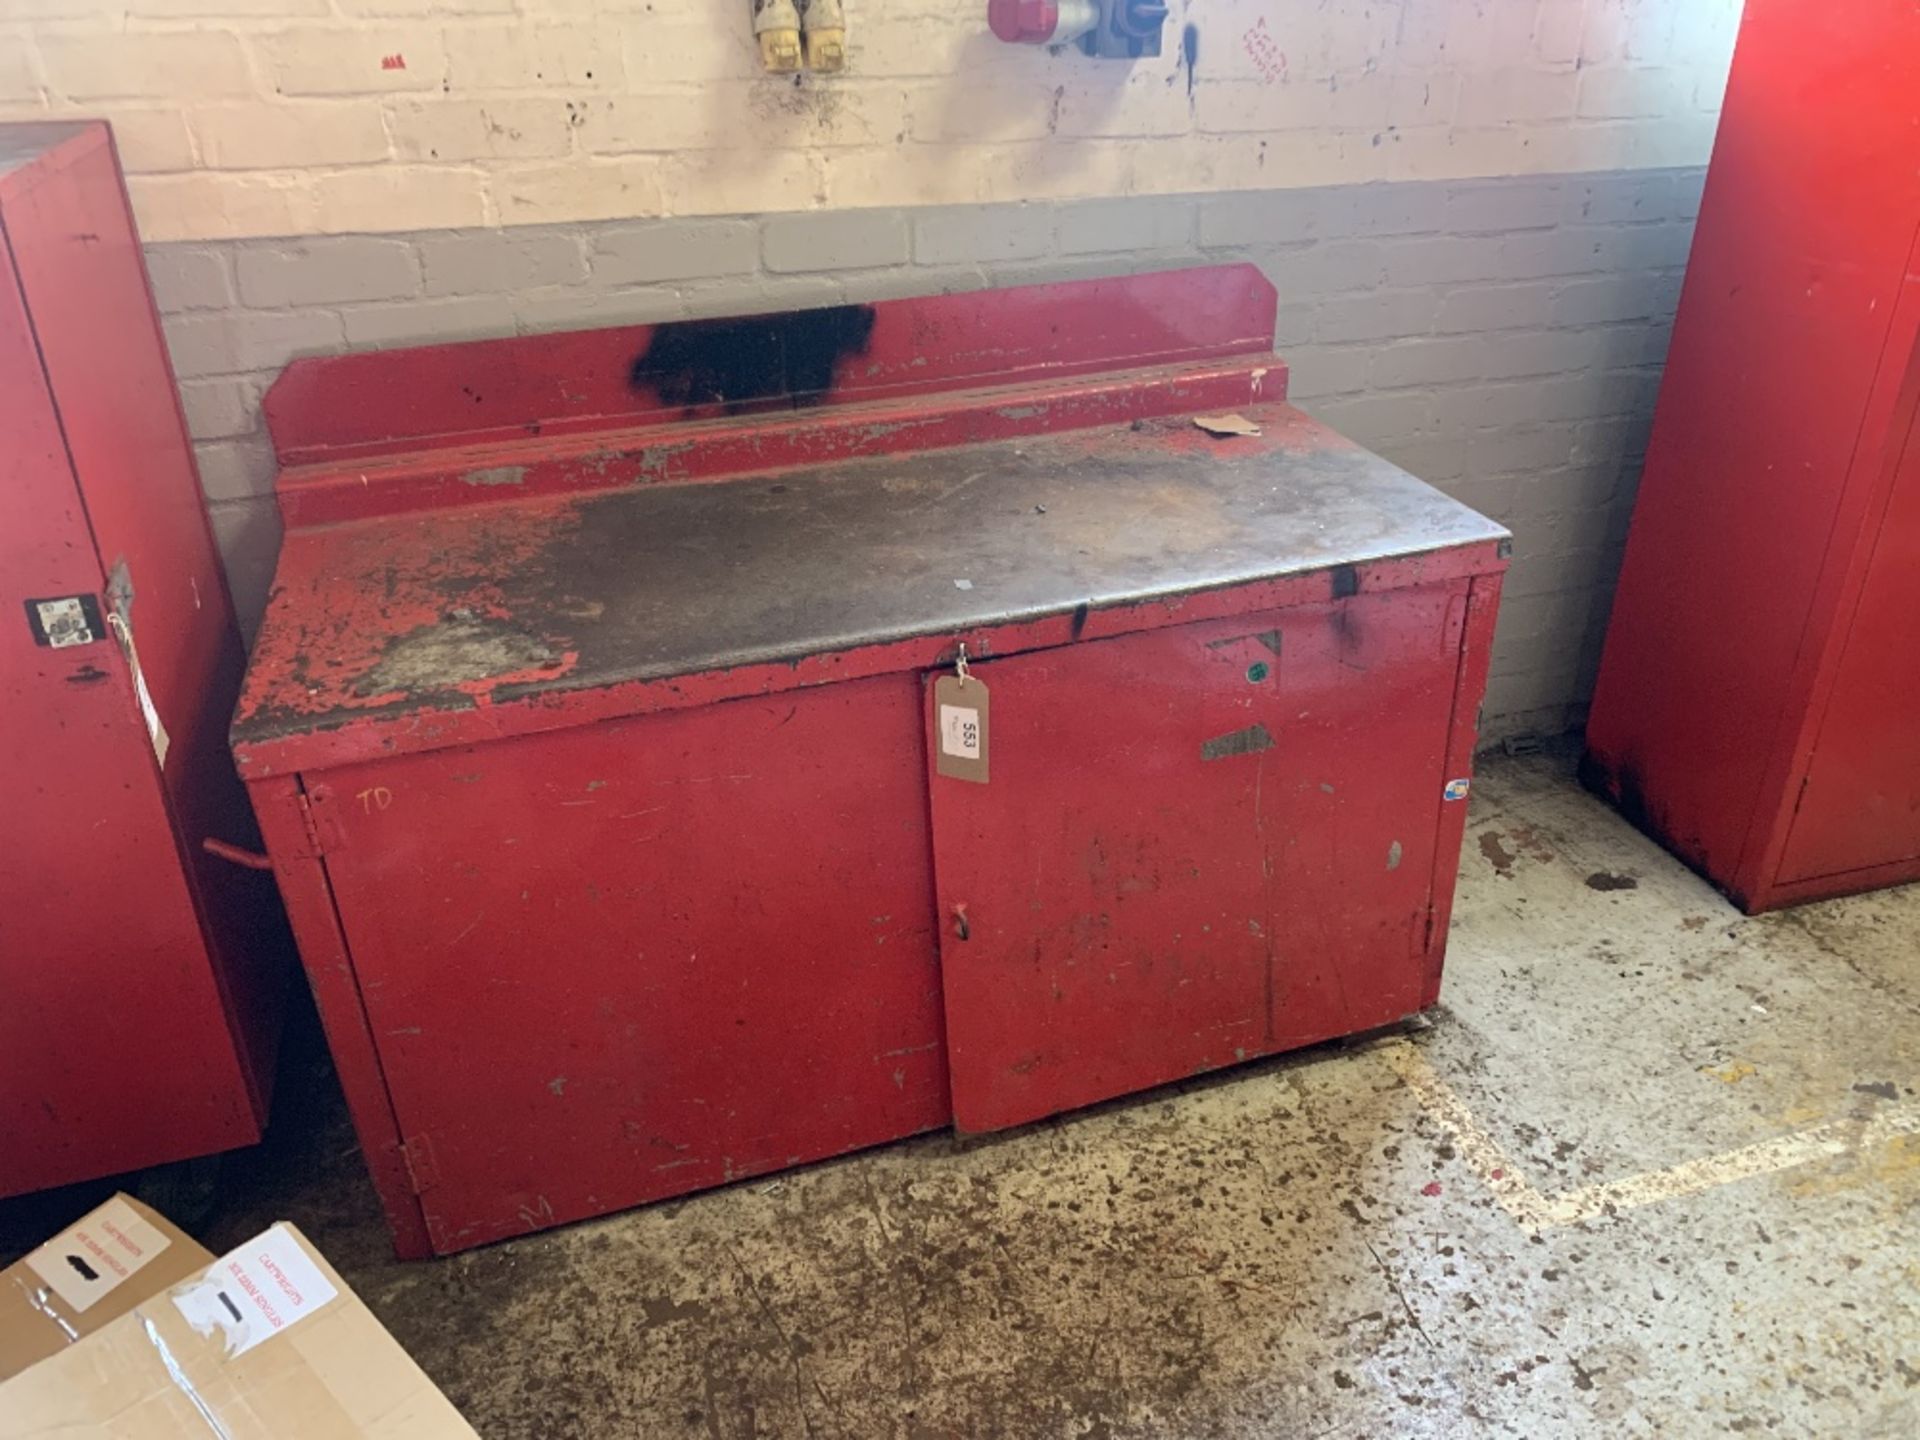 Steel workbench with undercounter storage